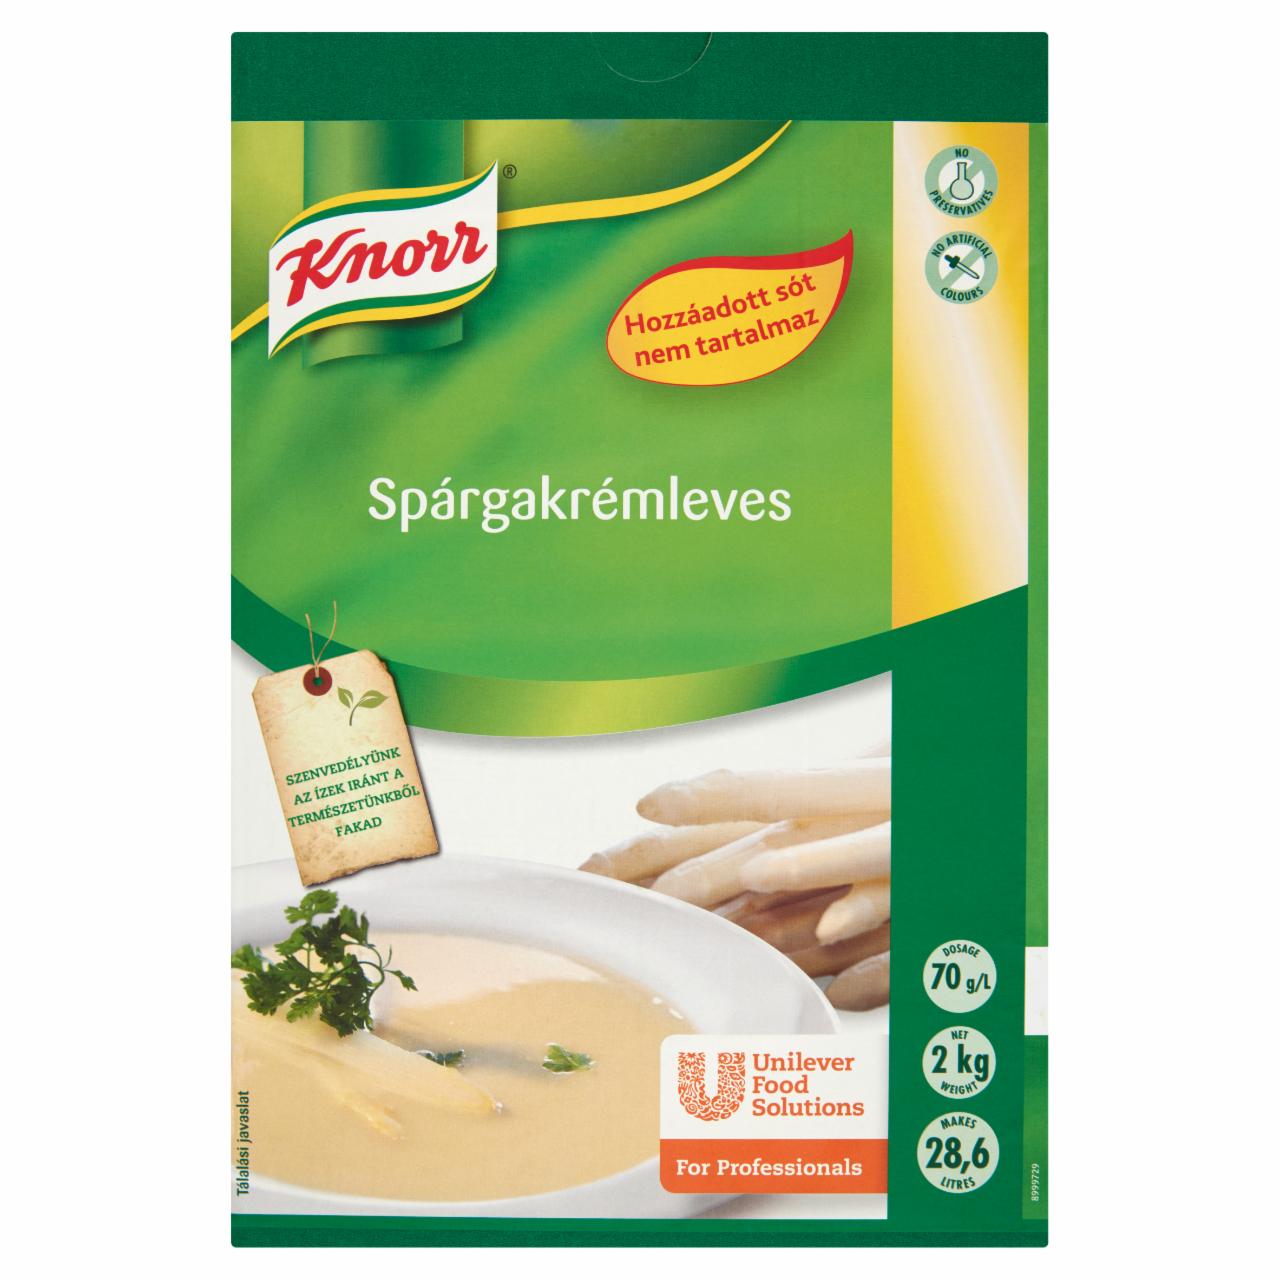 Képek - Knorr Spárgakrémleves alap hozzáadott só nélkül 2 kg